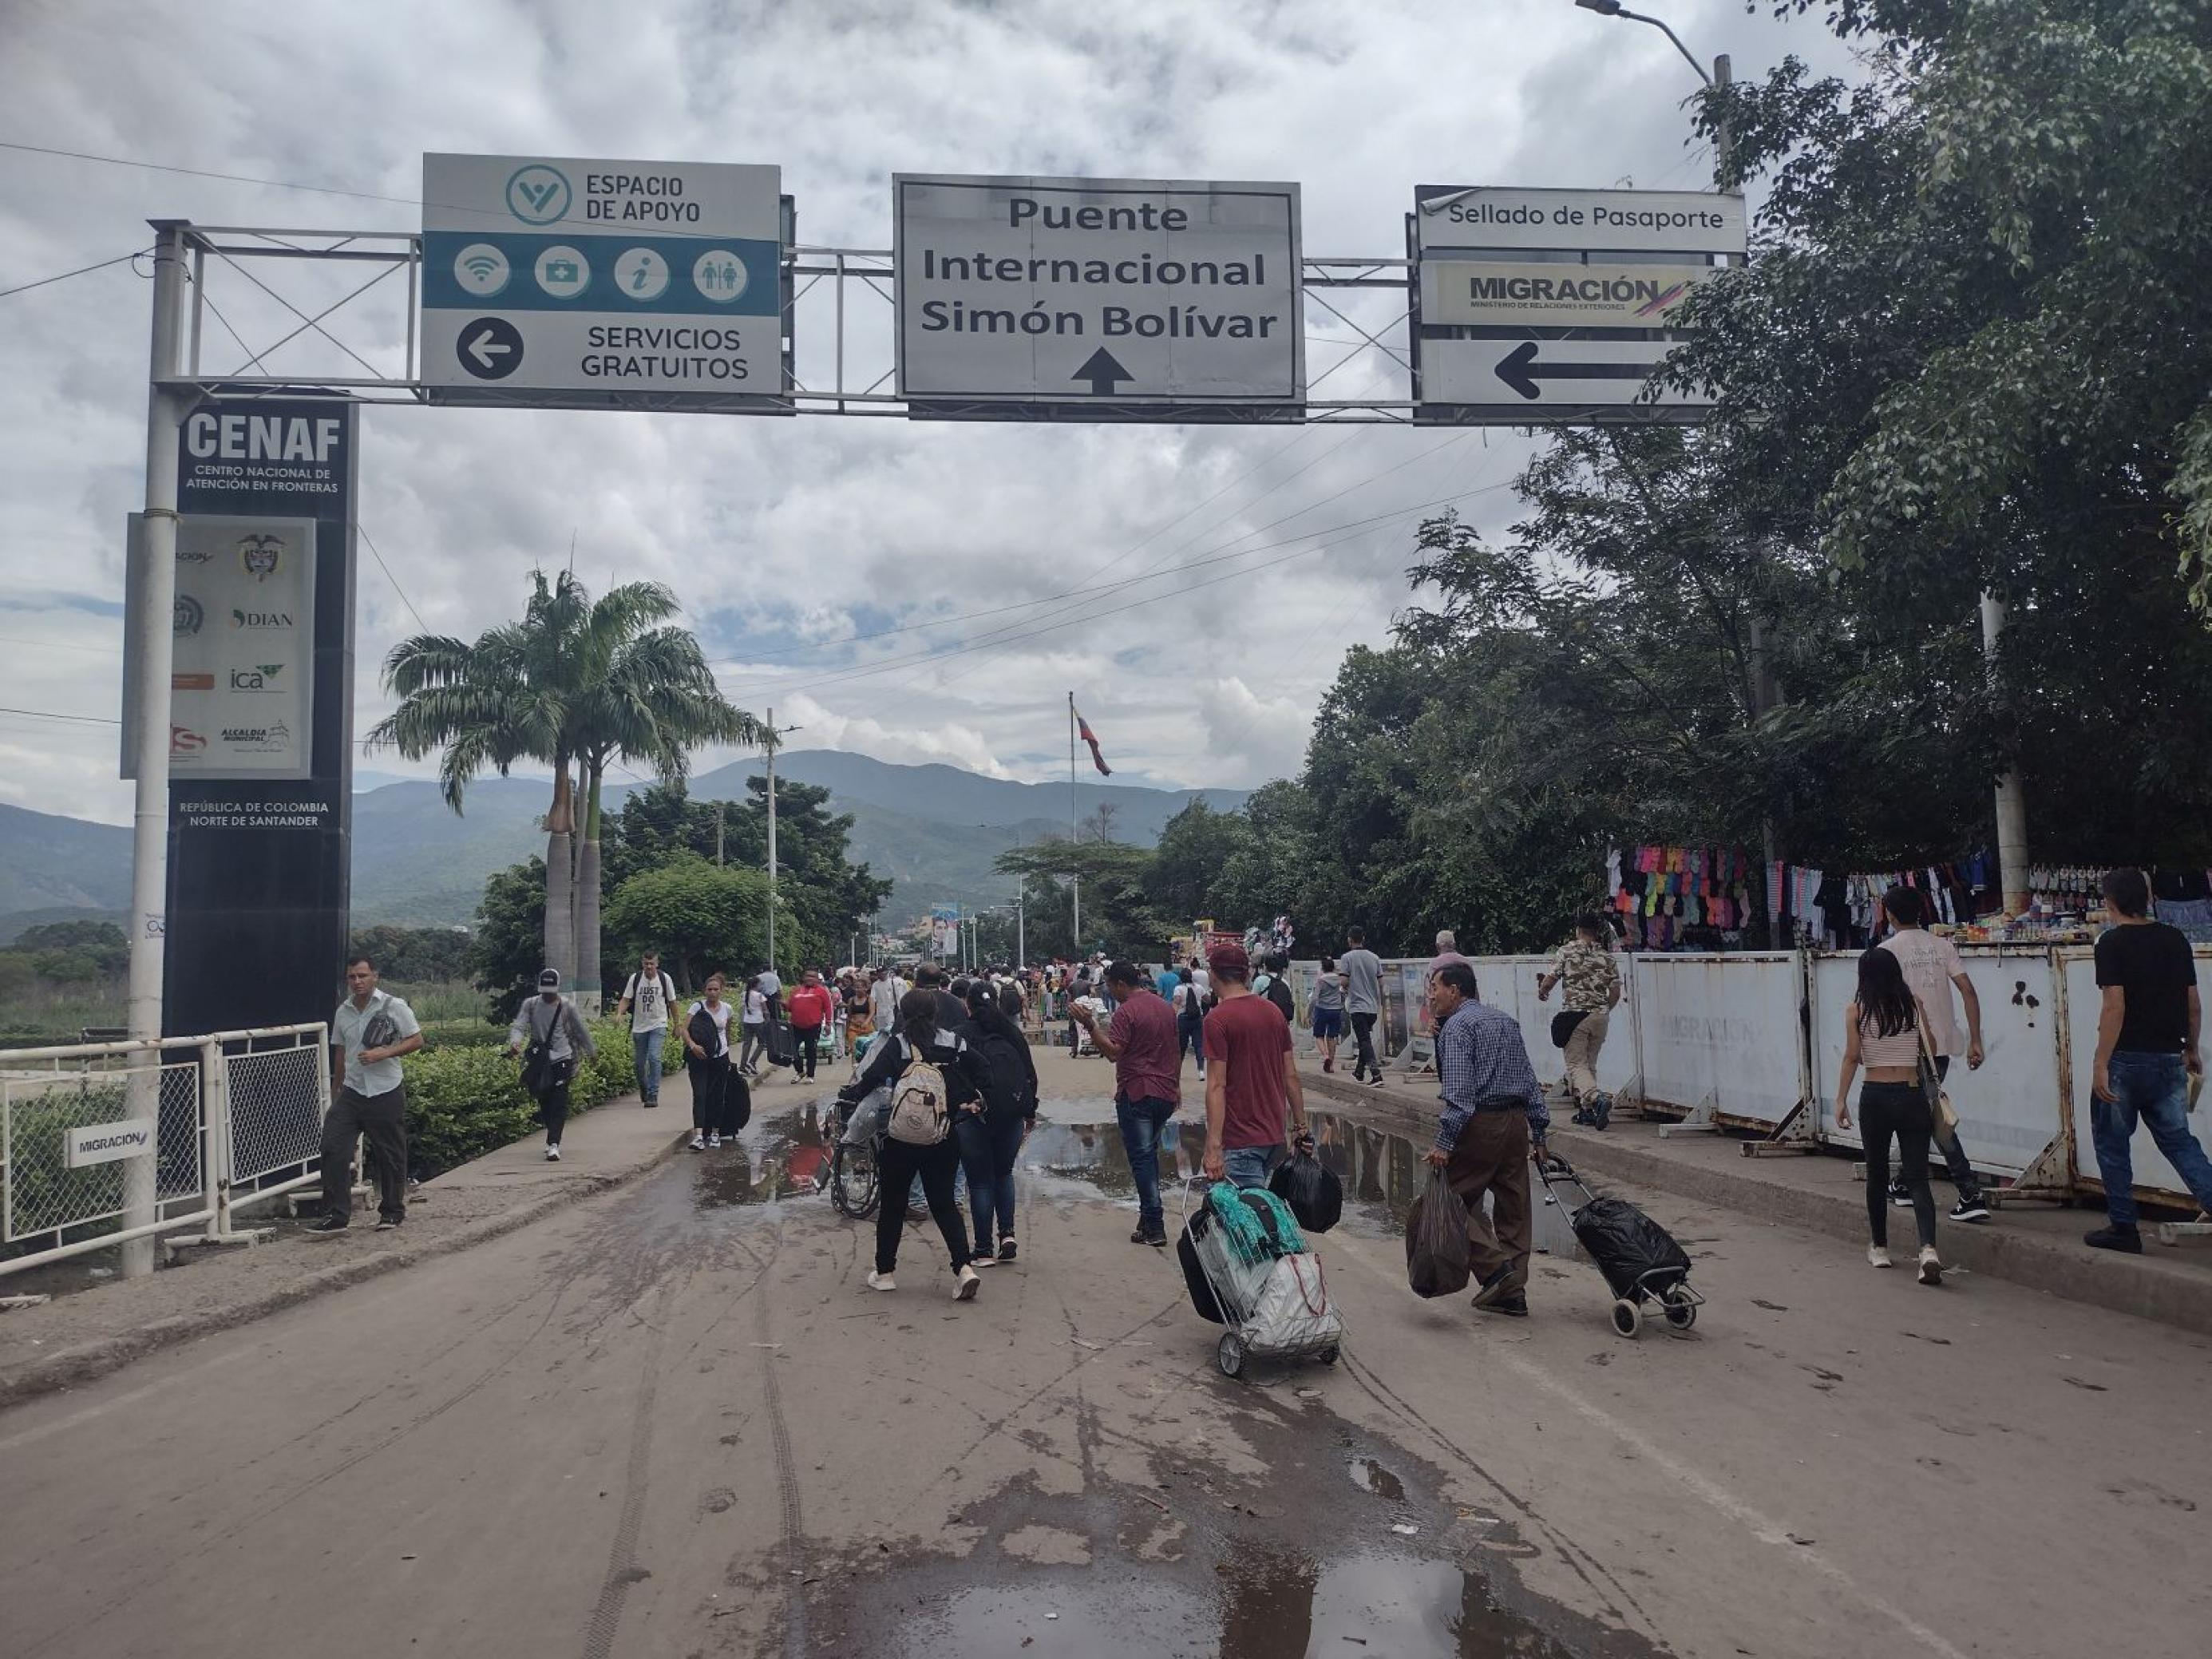 Strasse mit Schild oben: internationale Brücke Simon Bolivar. Menschen mit Rollkoffern laufen in beide Richtungen